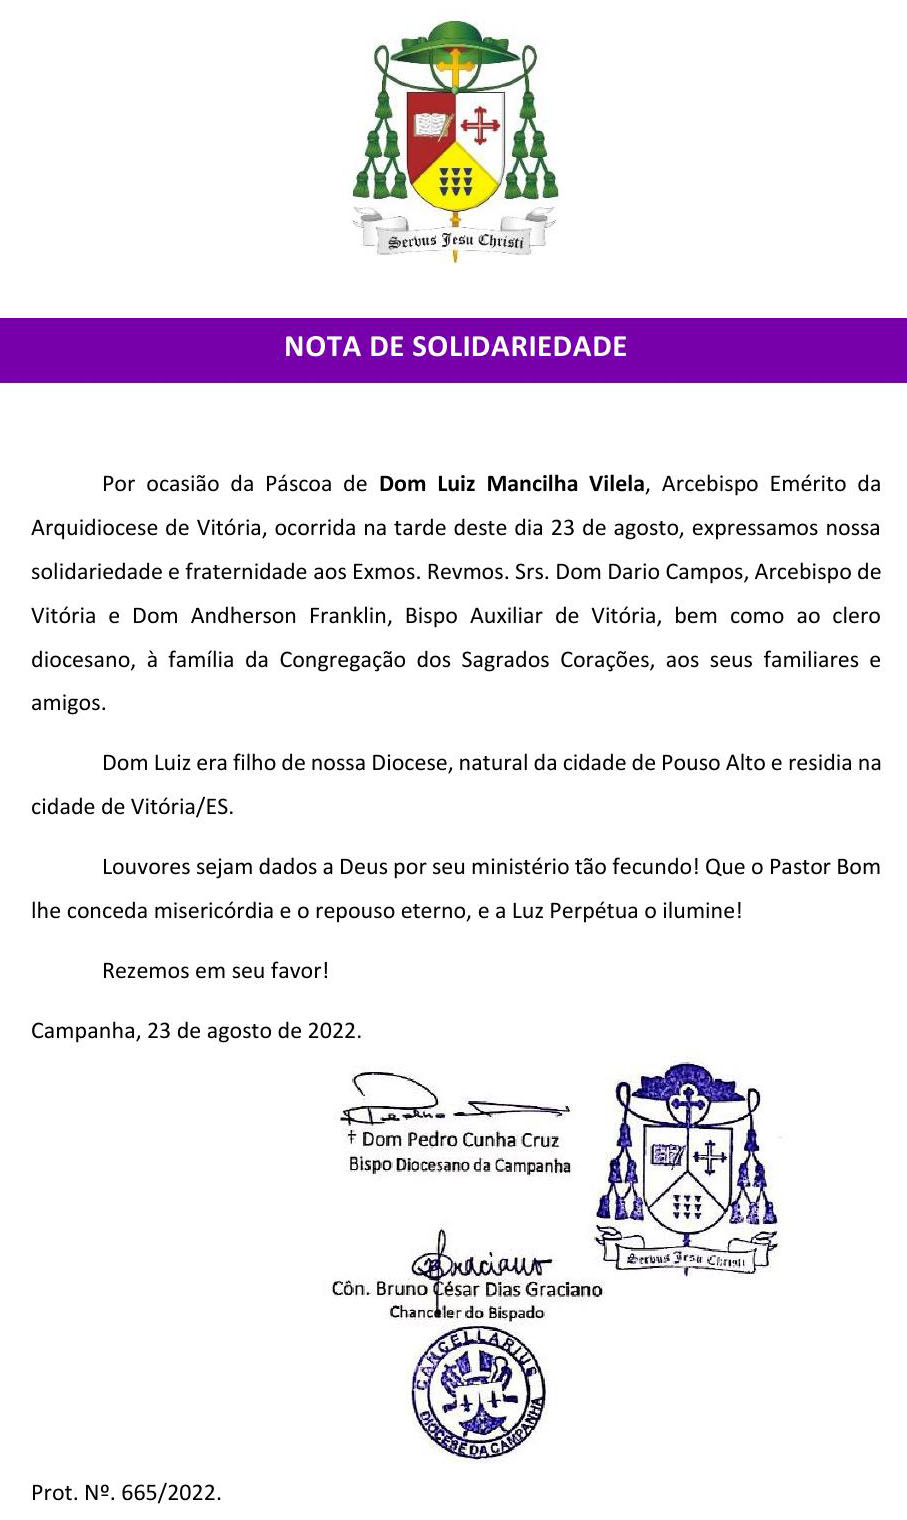 Nota de Solidariedade - Diocese da Campanha - Dom Luiz Mancilha Vilela